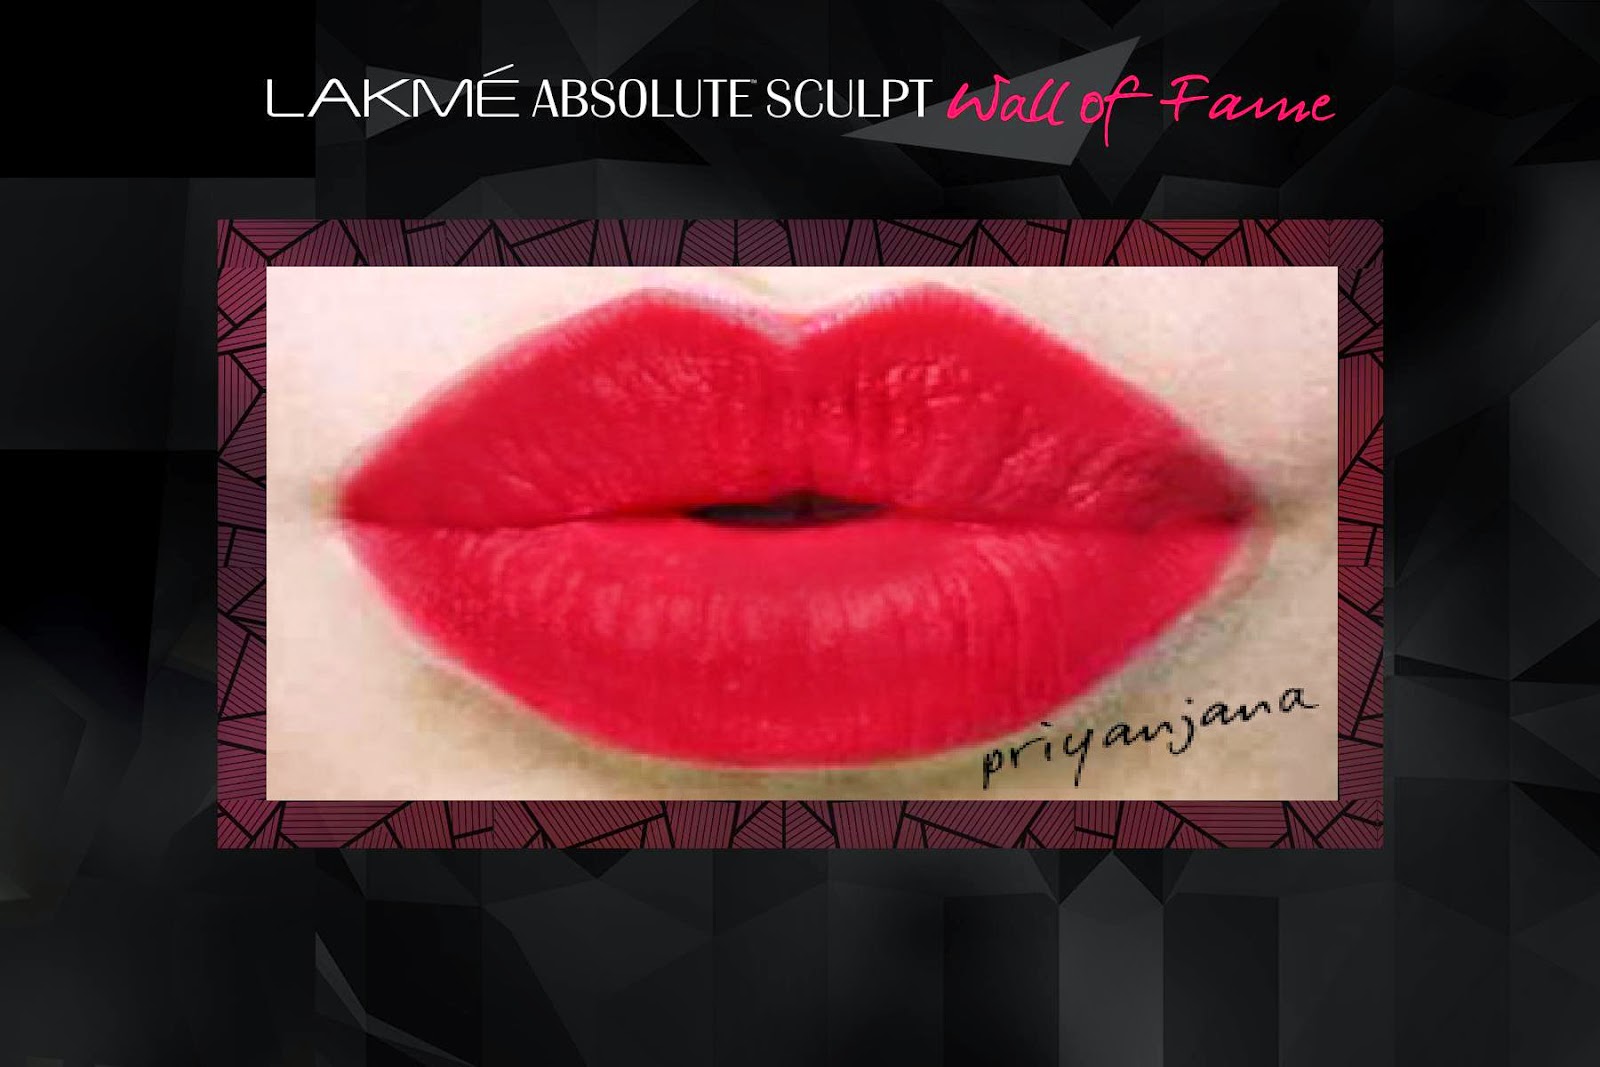 Lakme Absolute Burgundy Affair Sculpt Studio Hi- definition Matte Lipstick, Lakme Finale's shade